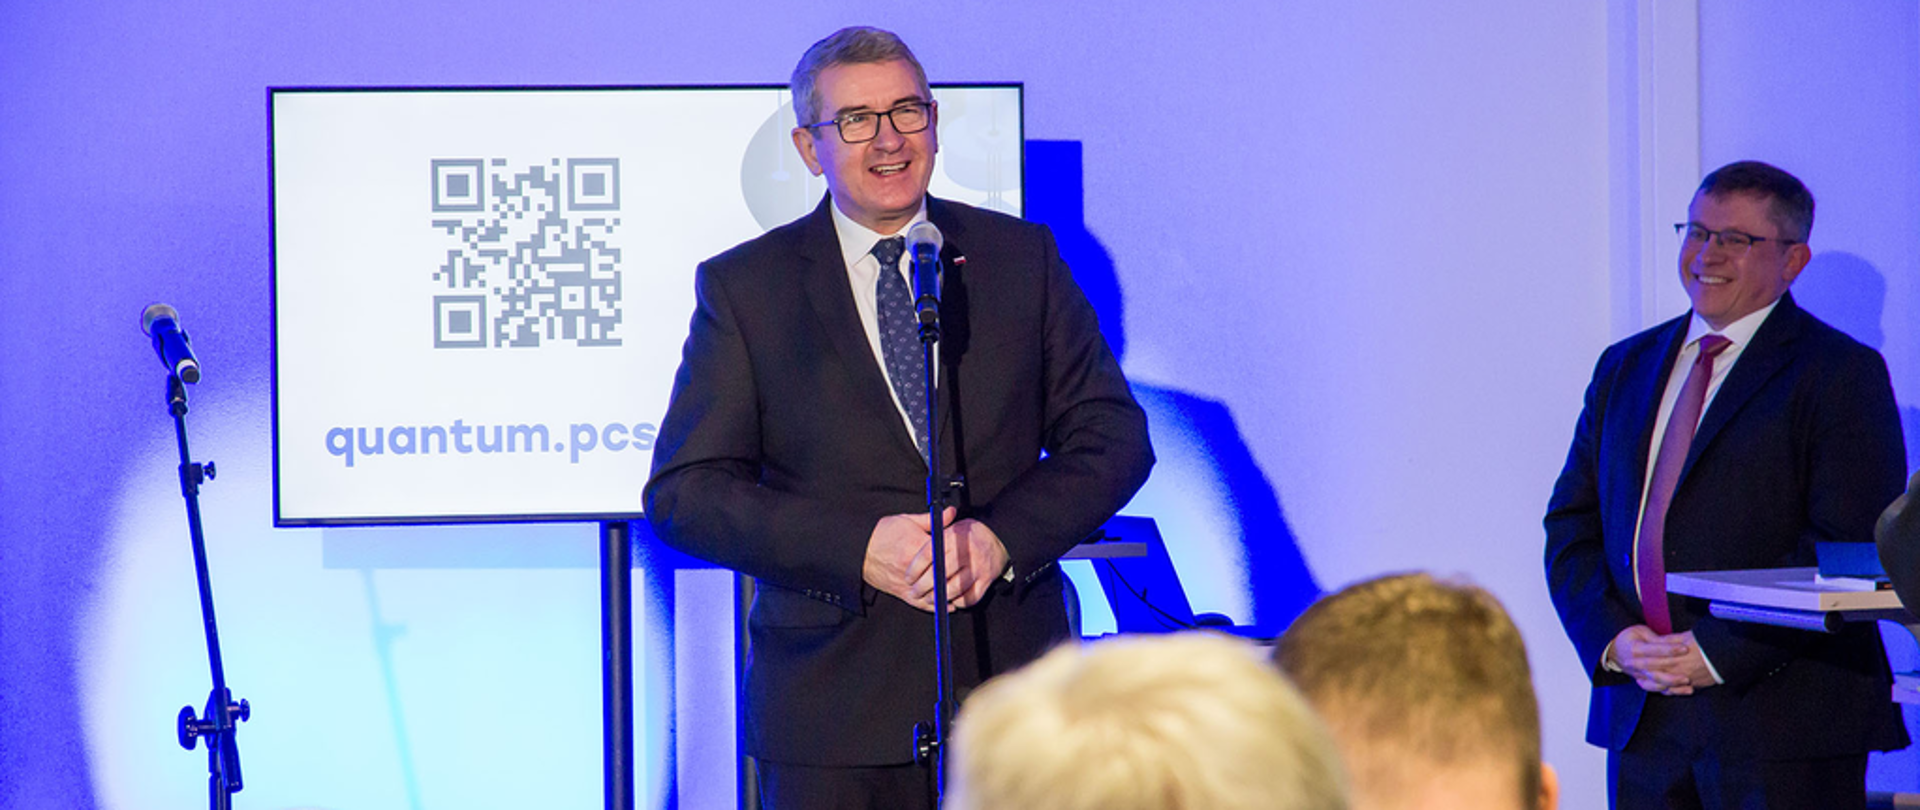 wiceminister Wojciech Murdzek przemawia do mikrofonu podczas wystąpienia na otwarciu hubu do obliczeń kwantowych na politechnice w Poznaniu